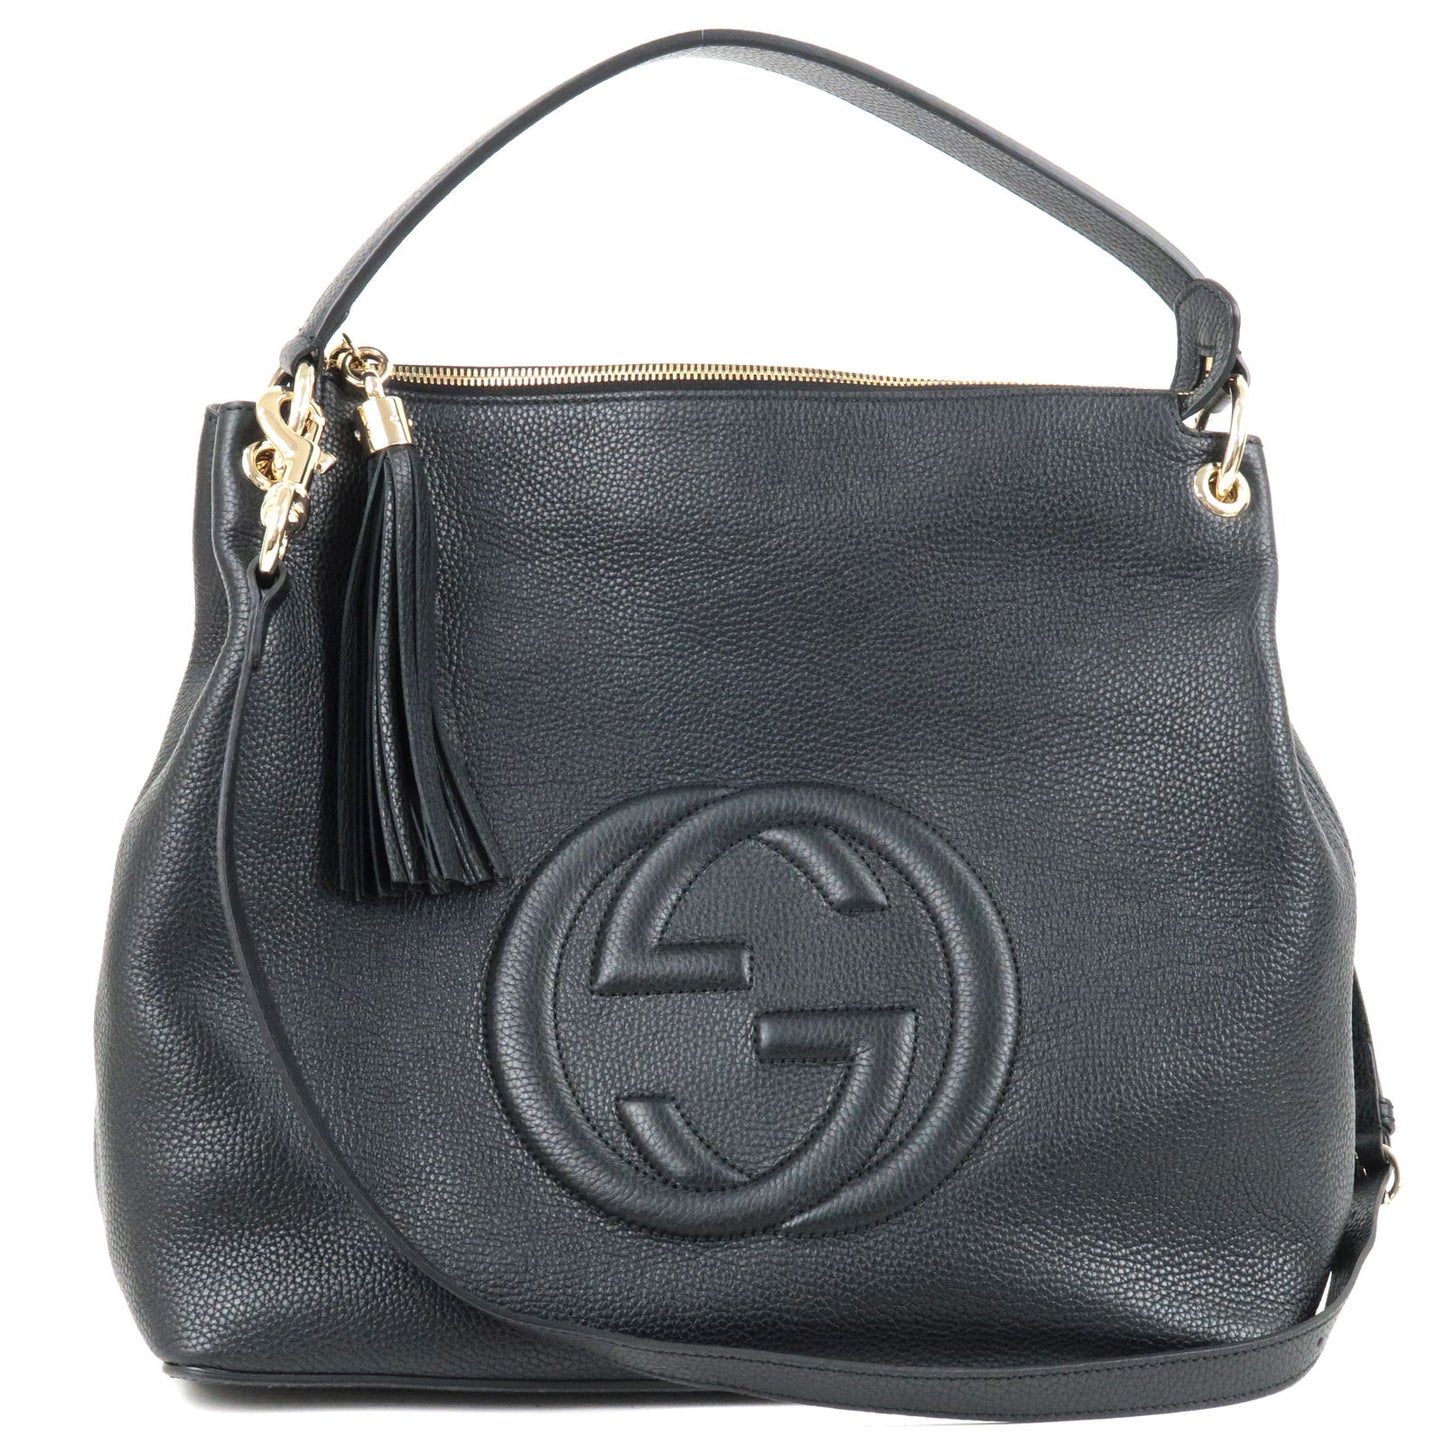 GUCCI-SOHO-Leather-2Way-Shoulder-Bag-Hand-Bag-Black-536194